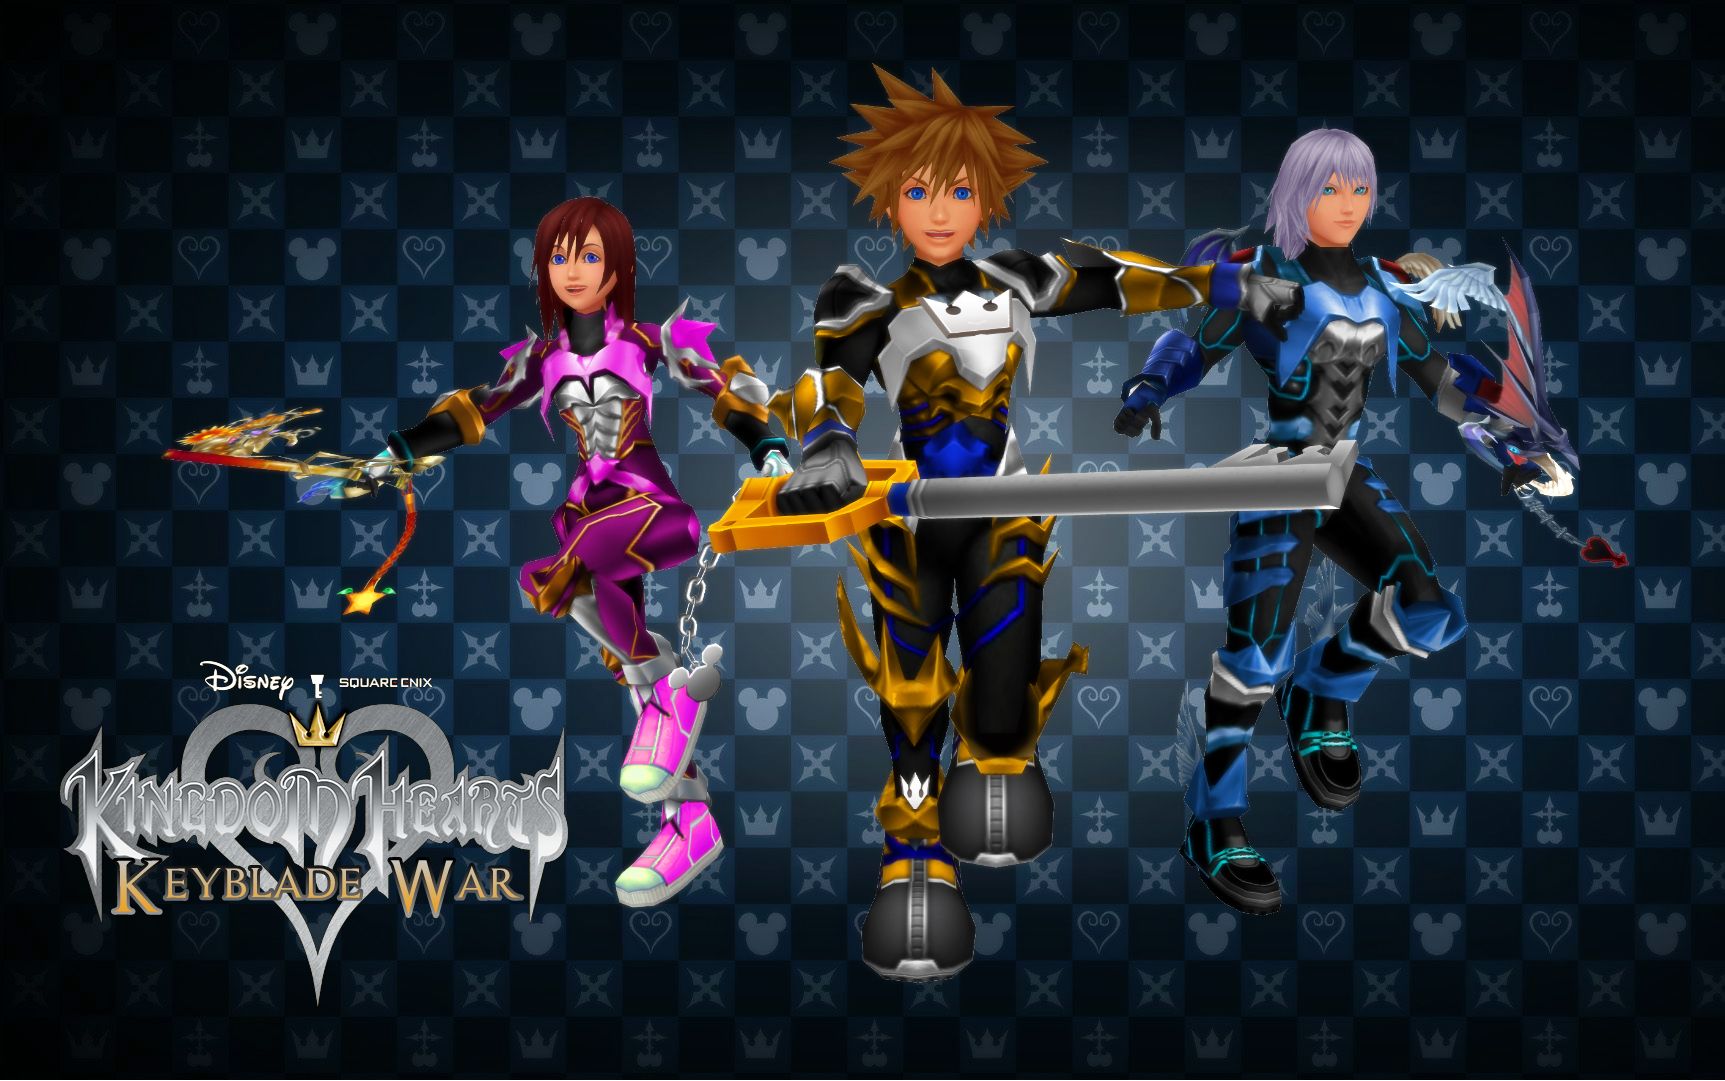 Kingdom Hearts Keyblade War Custom Wallpaper by todsen19 on DeviantArt